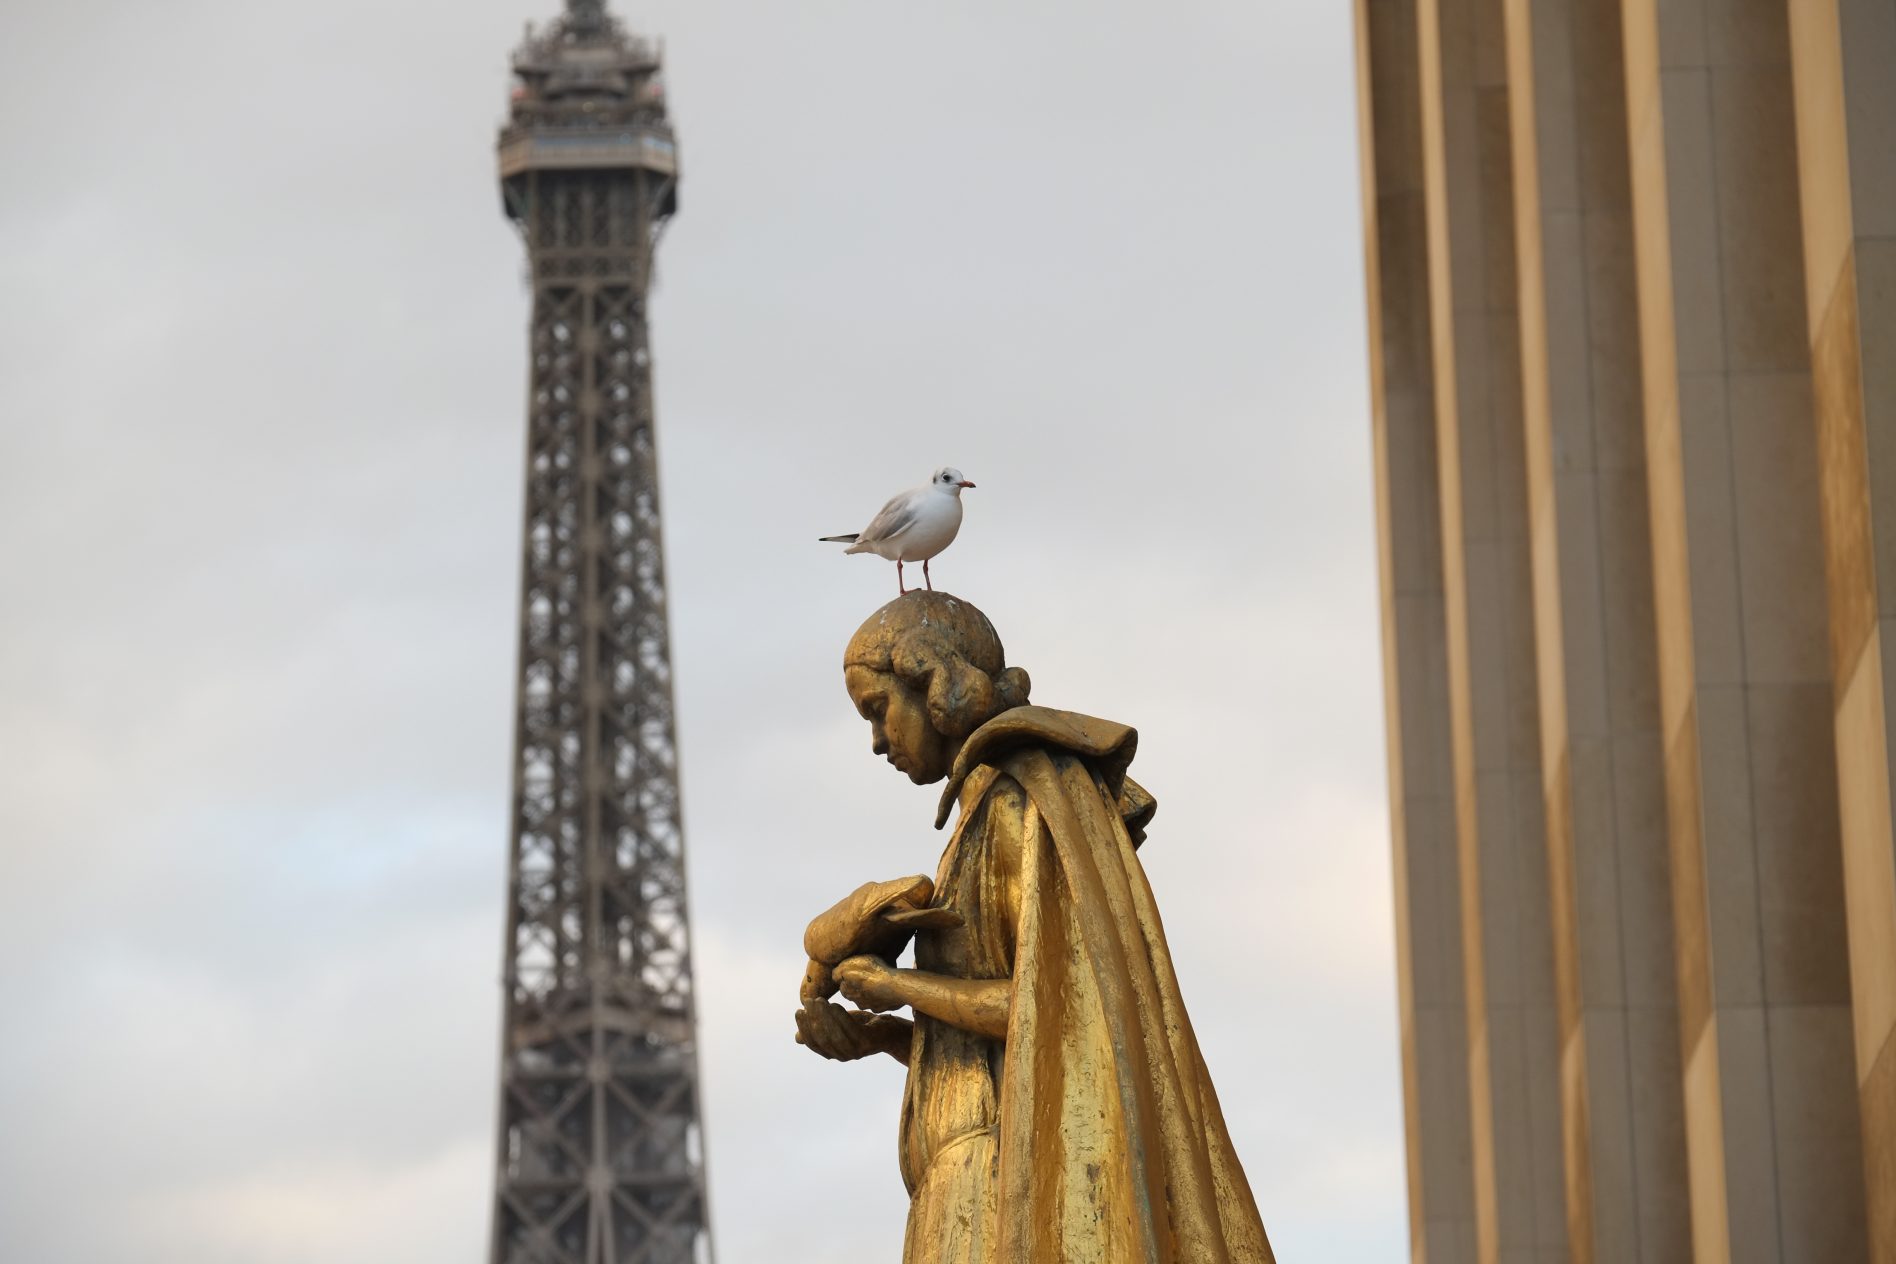 Une mouette sur une statue du Trocadéro